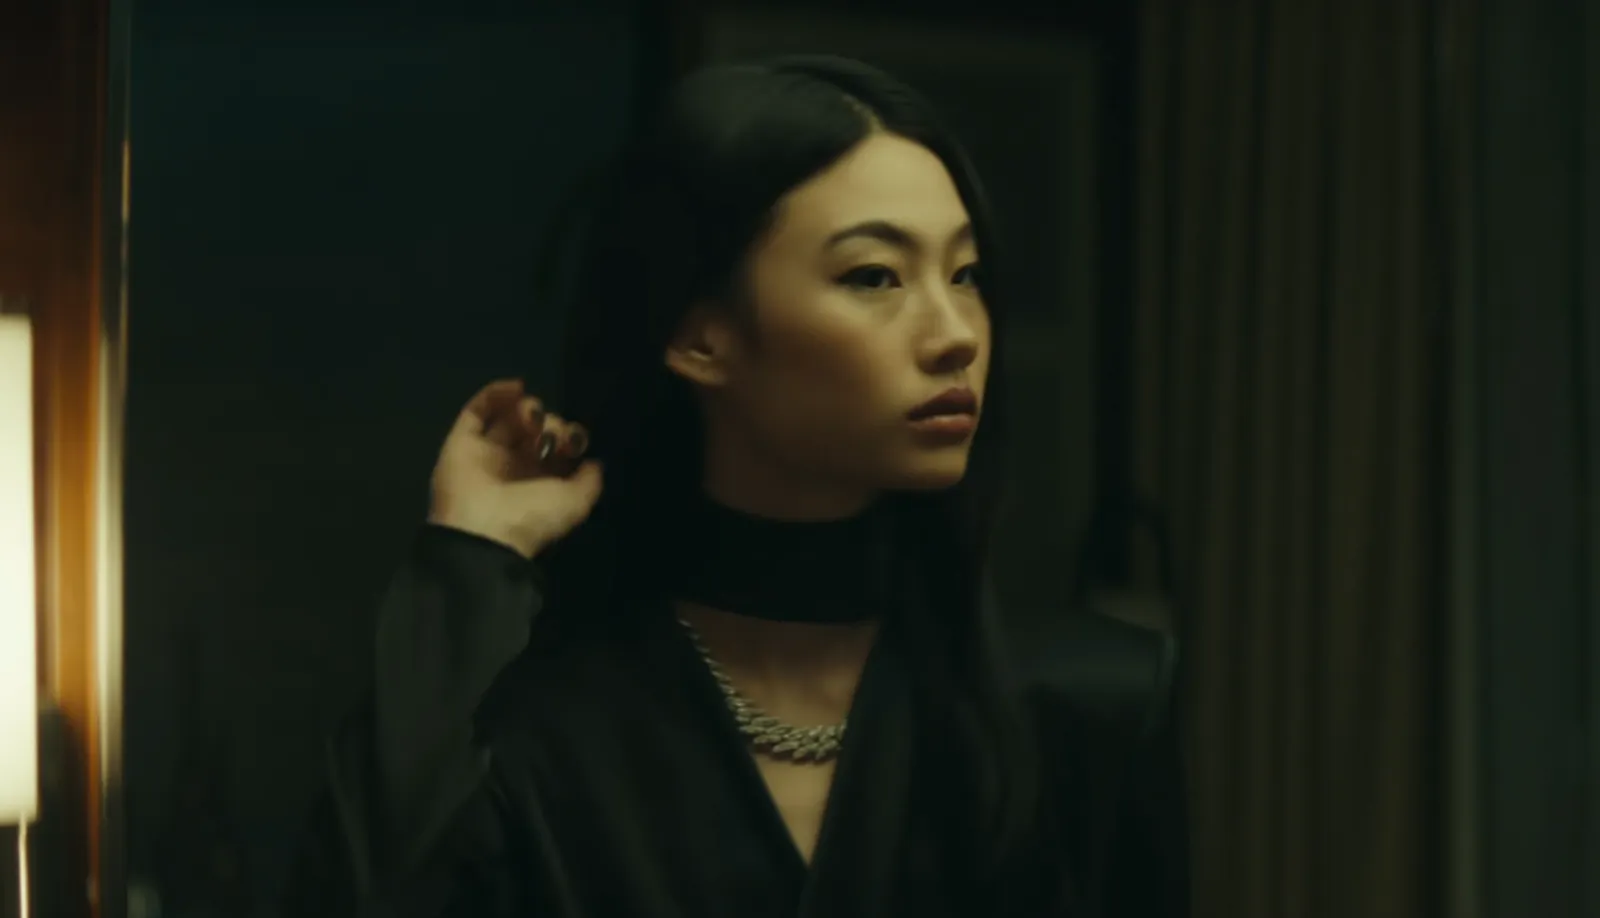 Jung Ho Yeon Karaoke Bareng The Weeknd di MV "Out of Time"